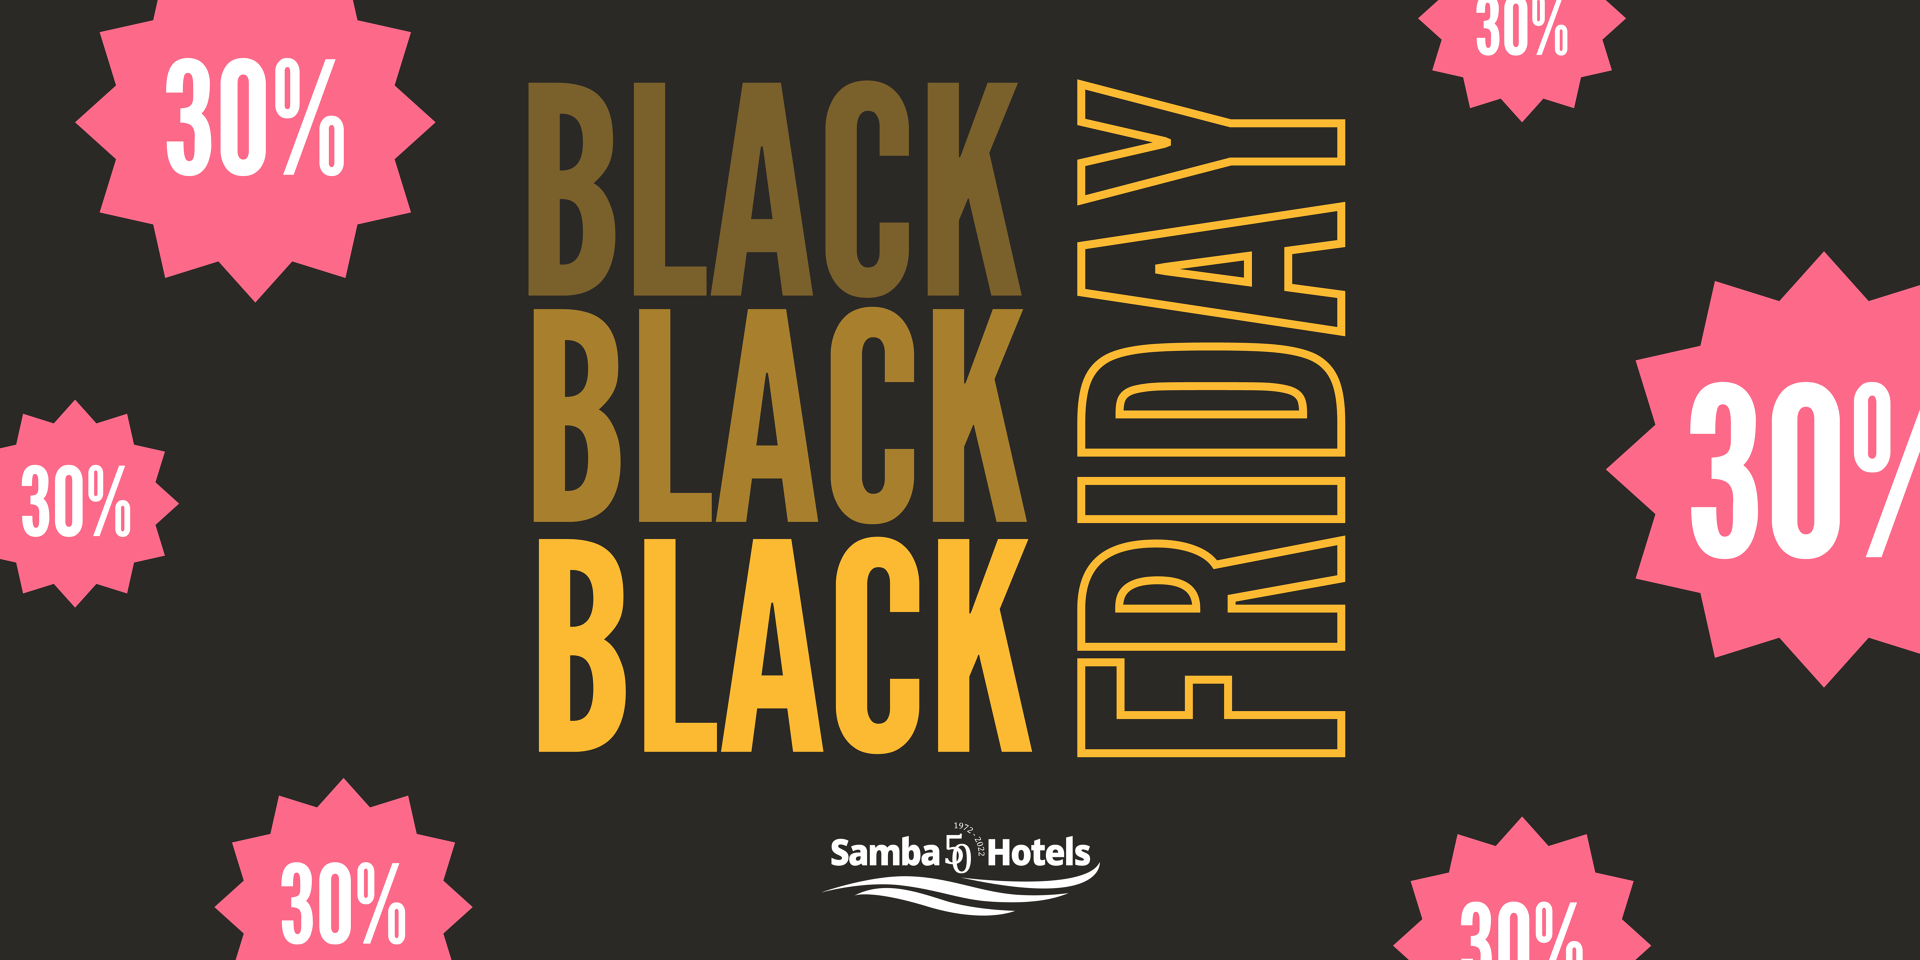 Économisez 30% sur vos vacances avec notre offre Black Friday dans Samba Hotels, Lloret de Mar